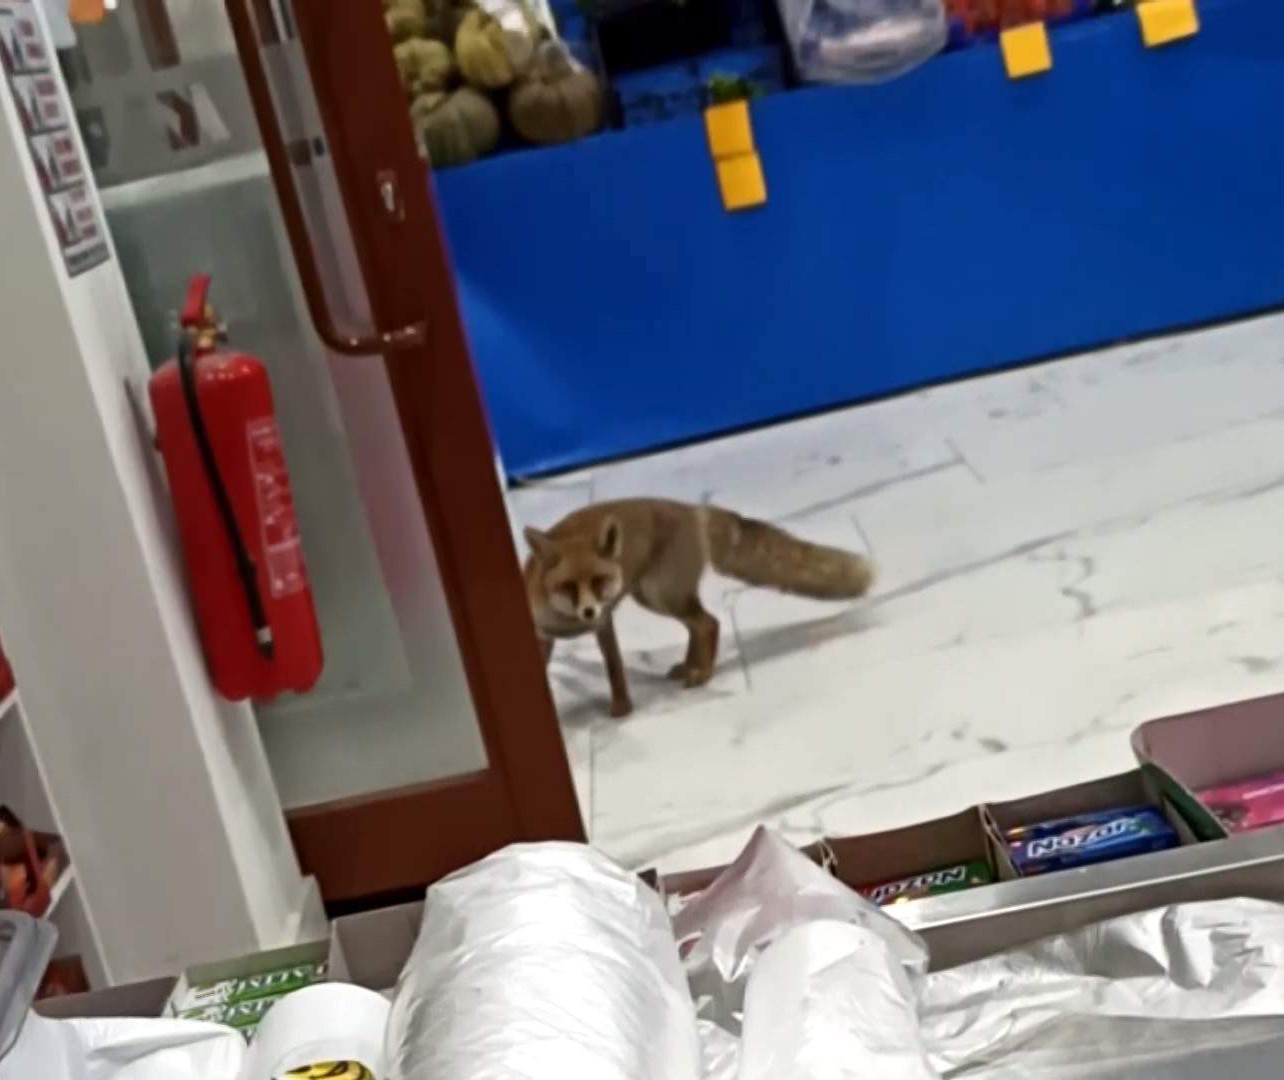 Aç kalan tilki şehir merkezinde markete girince şaşkınlığa neden oldu